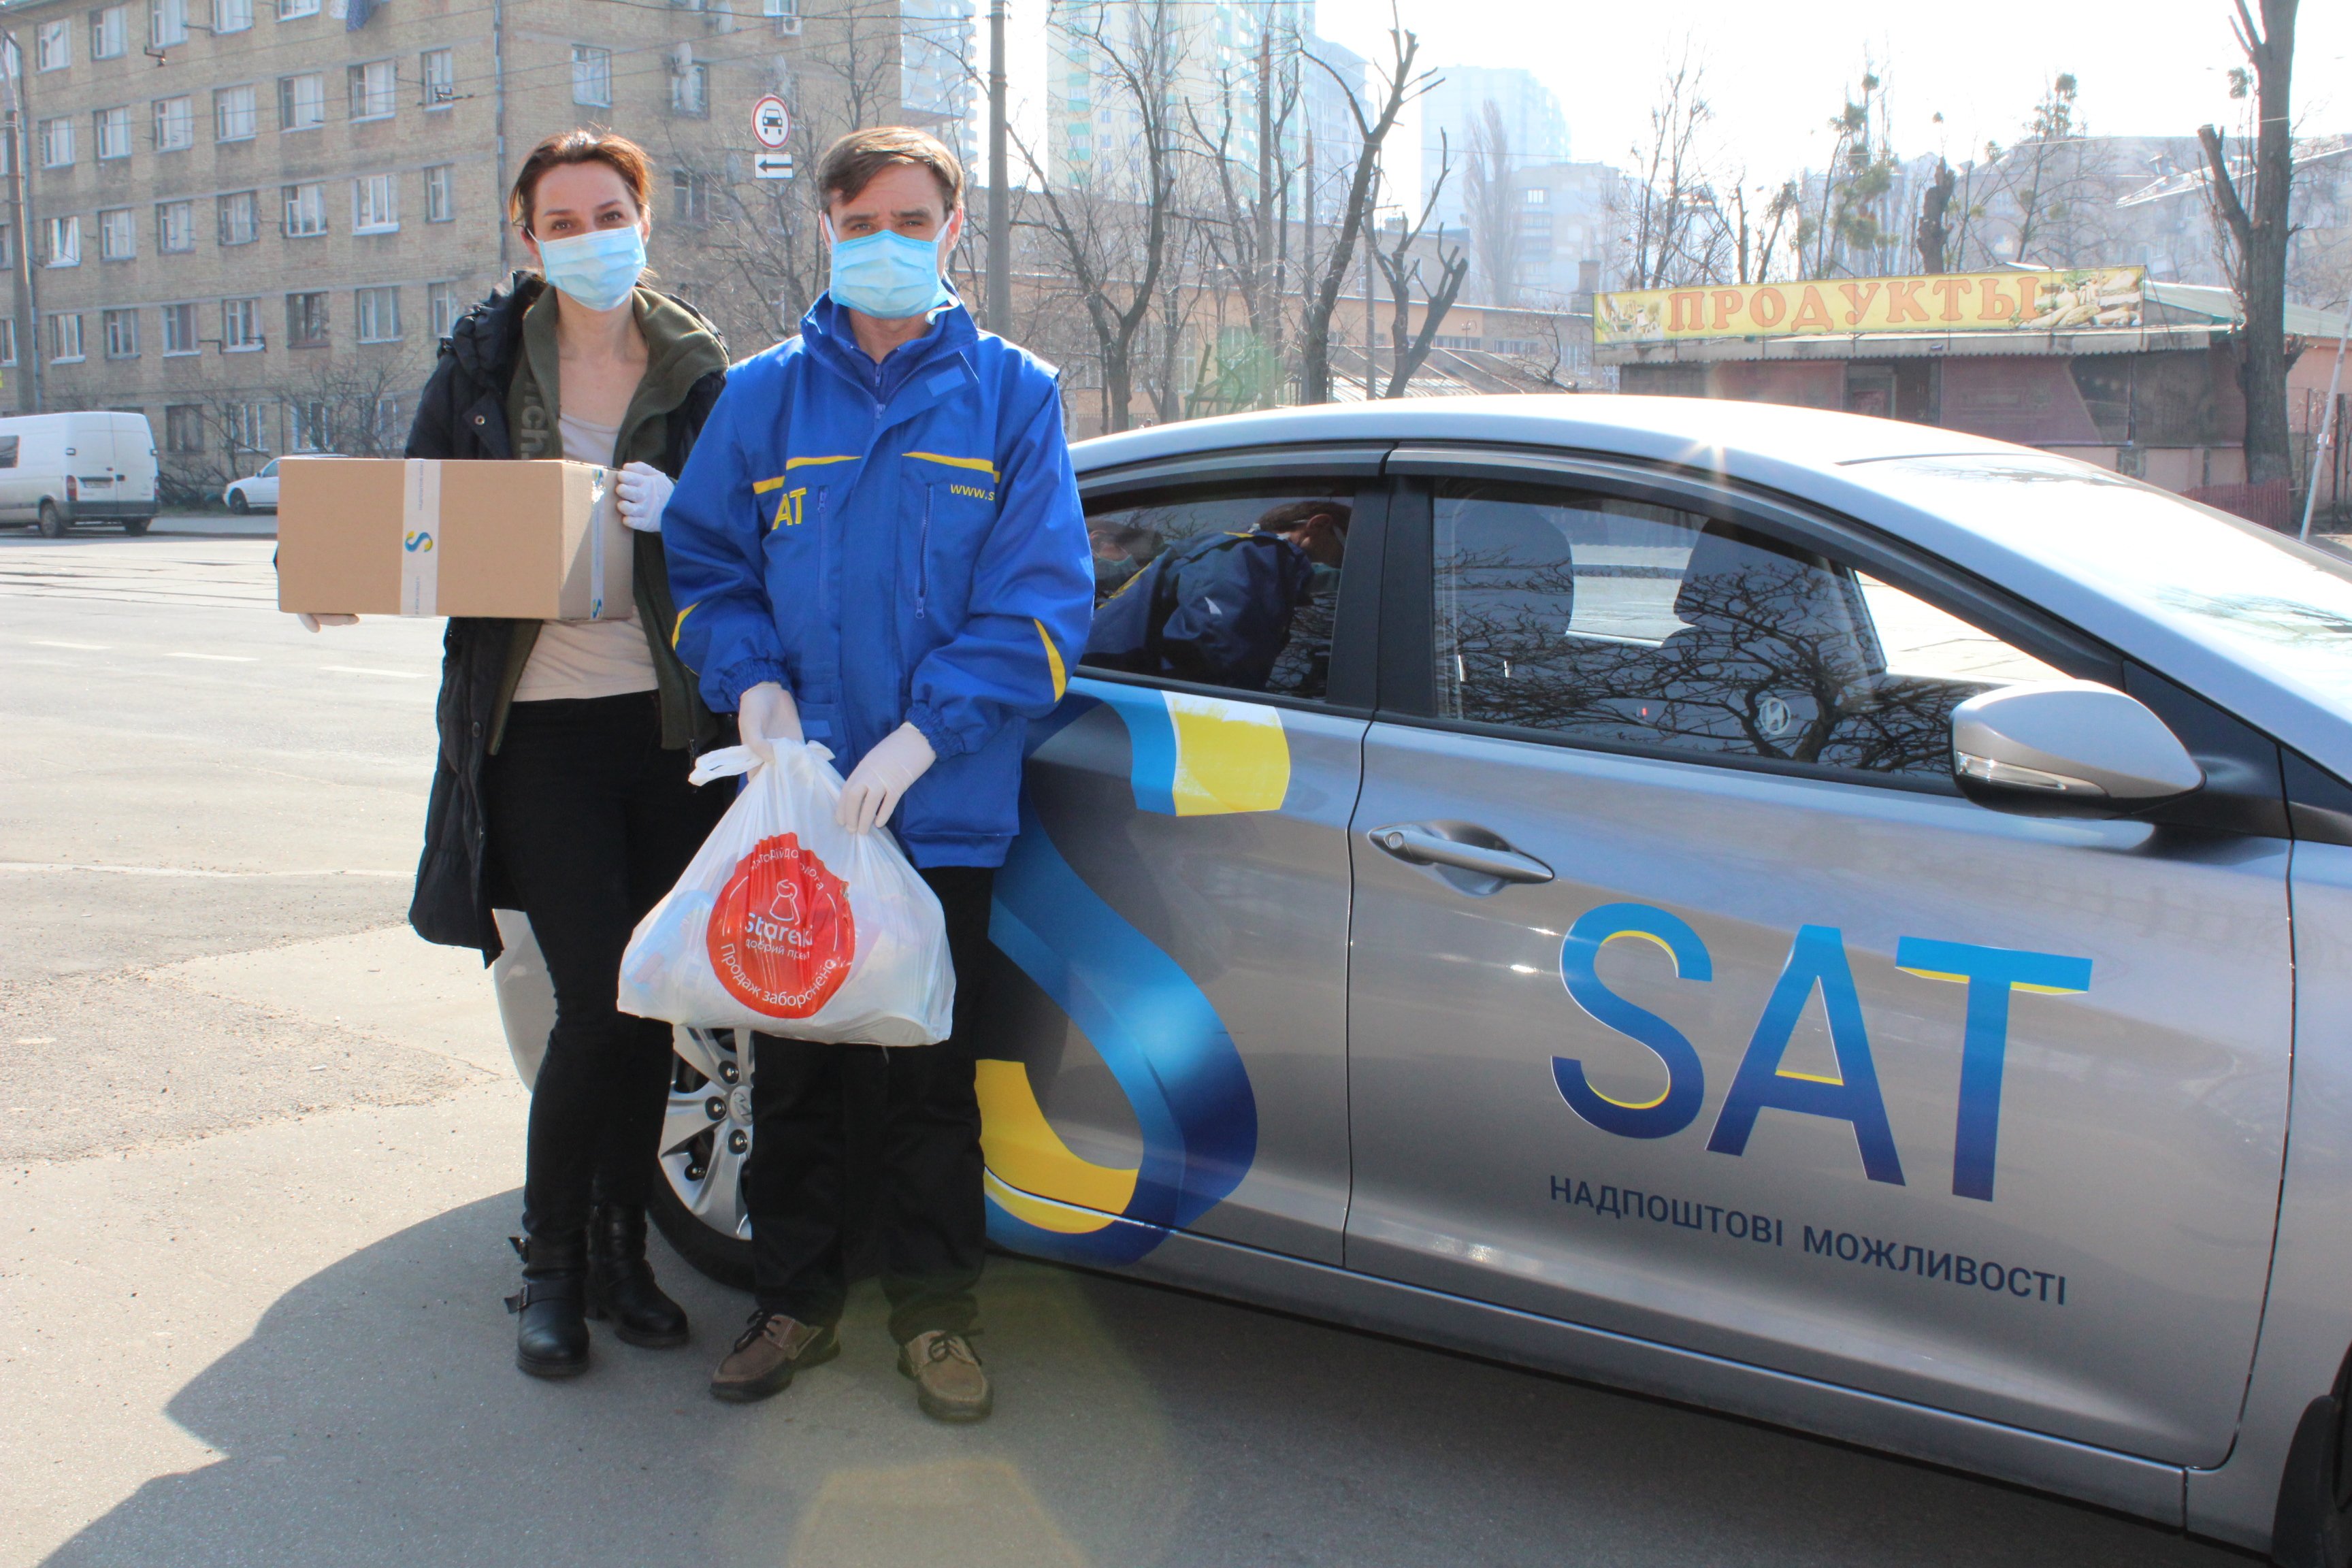 Украинская транспортная компания решила на период карантина бесплатно доставлять продукты пожилым людям в Киеве